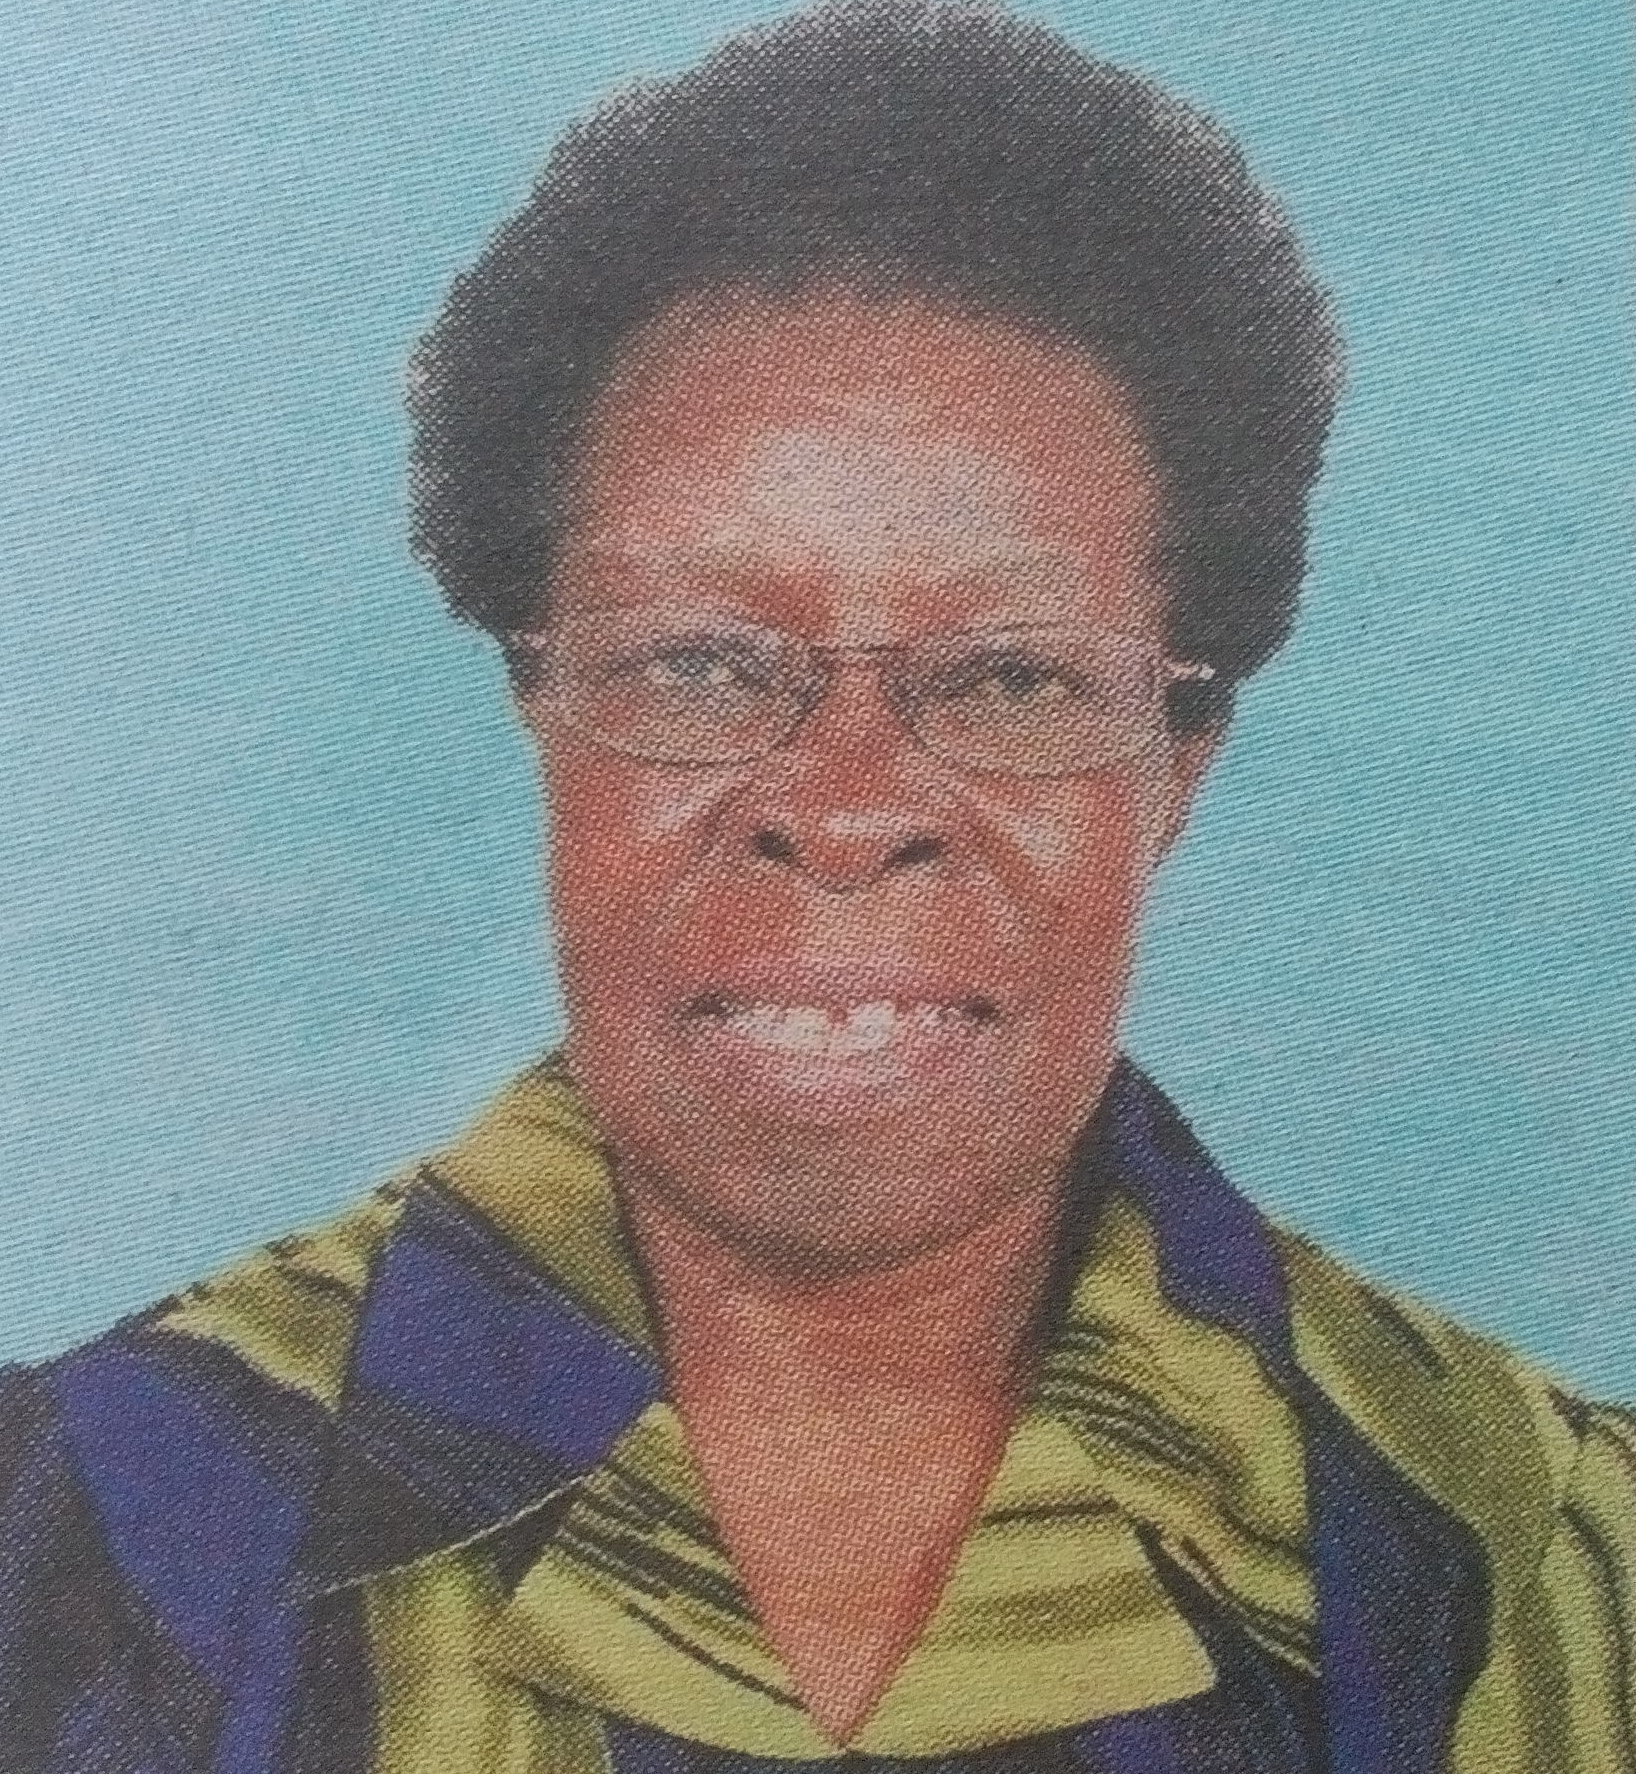 Obituary Image of Beatrice Mbayitsa Agwona Madiavale